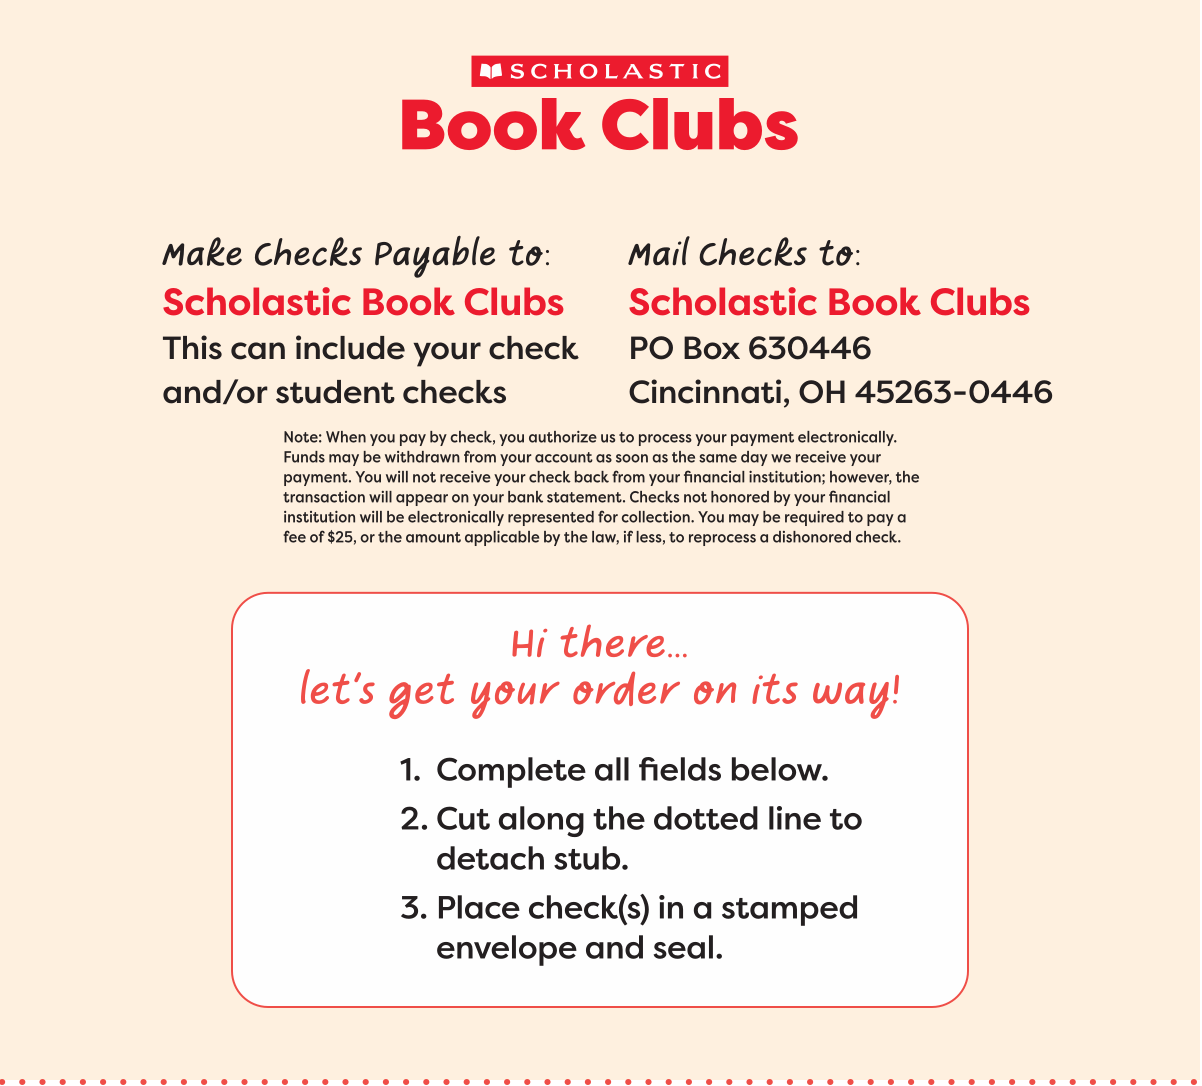 Shop Digital Flyers  Scholastic Book Clubs